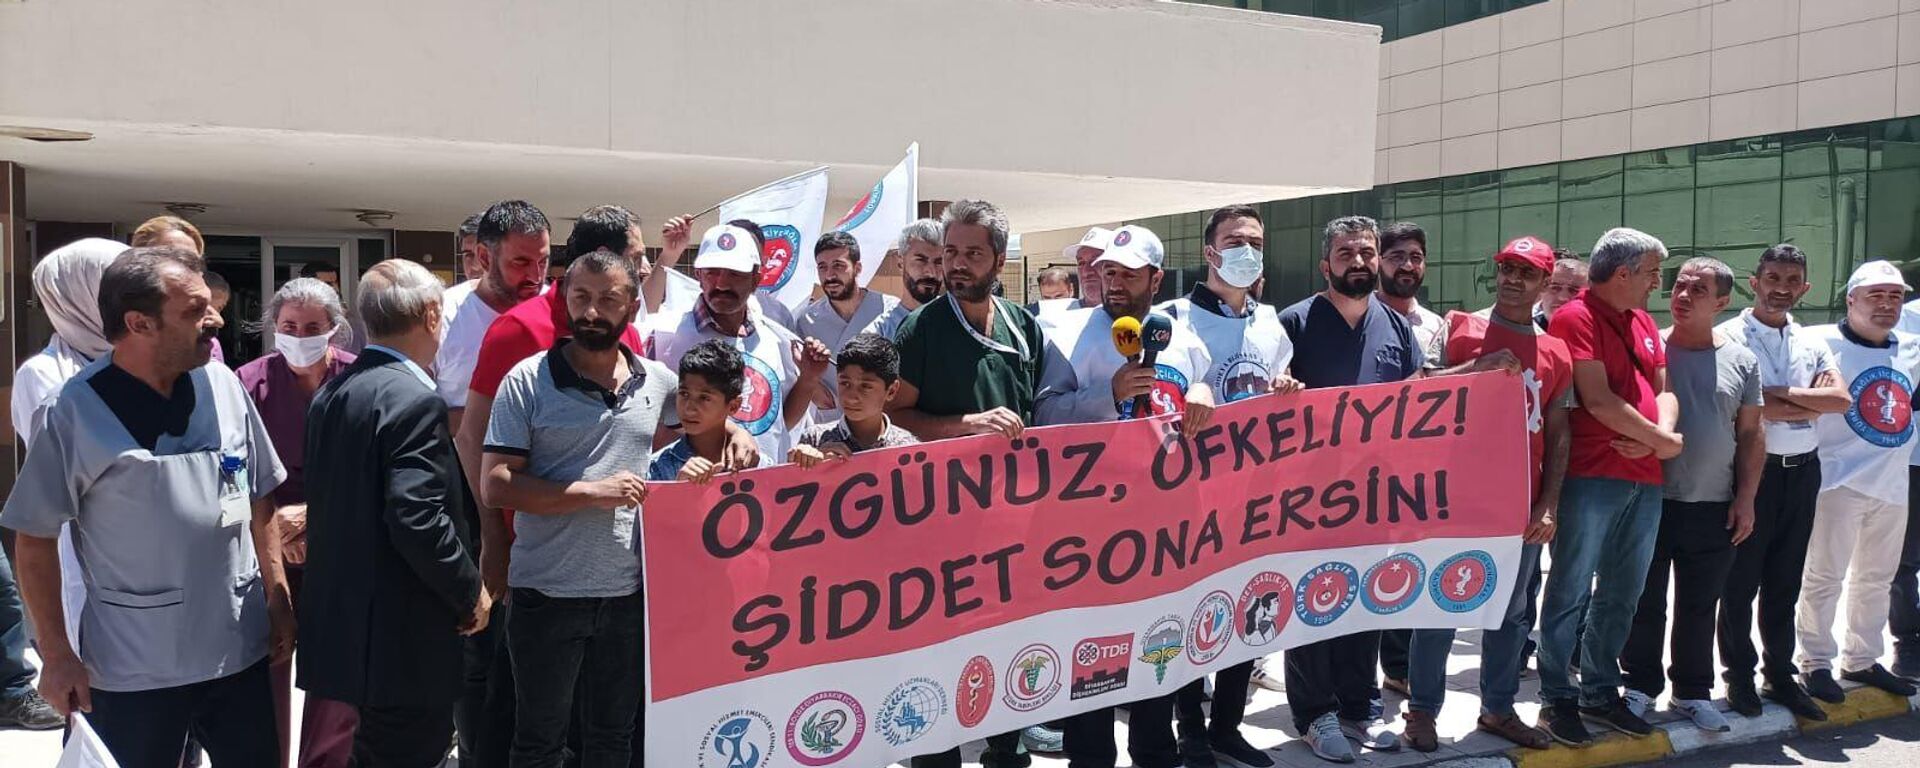 Sağlık örgütleri şiddeti protesto etti: ‘Ne sağlıkçının ne de halkın can güvenliği kalmamıştır' - Sputnik Türkiye, 1920, 25.07.2022